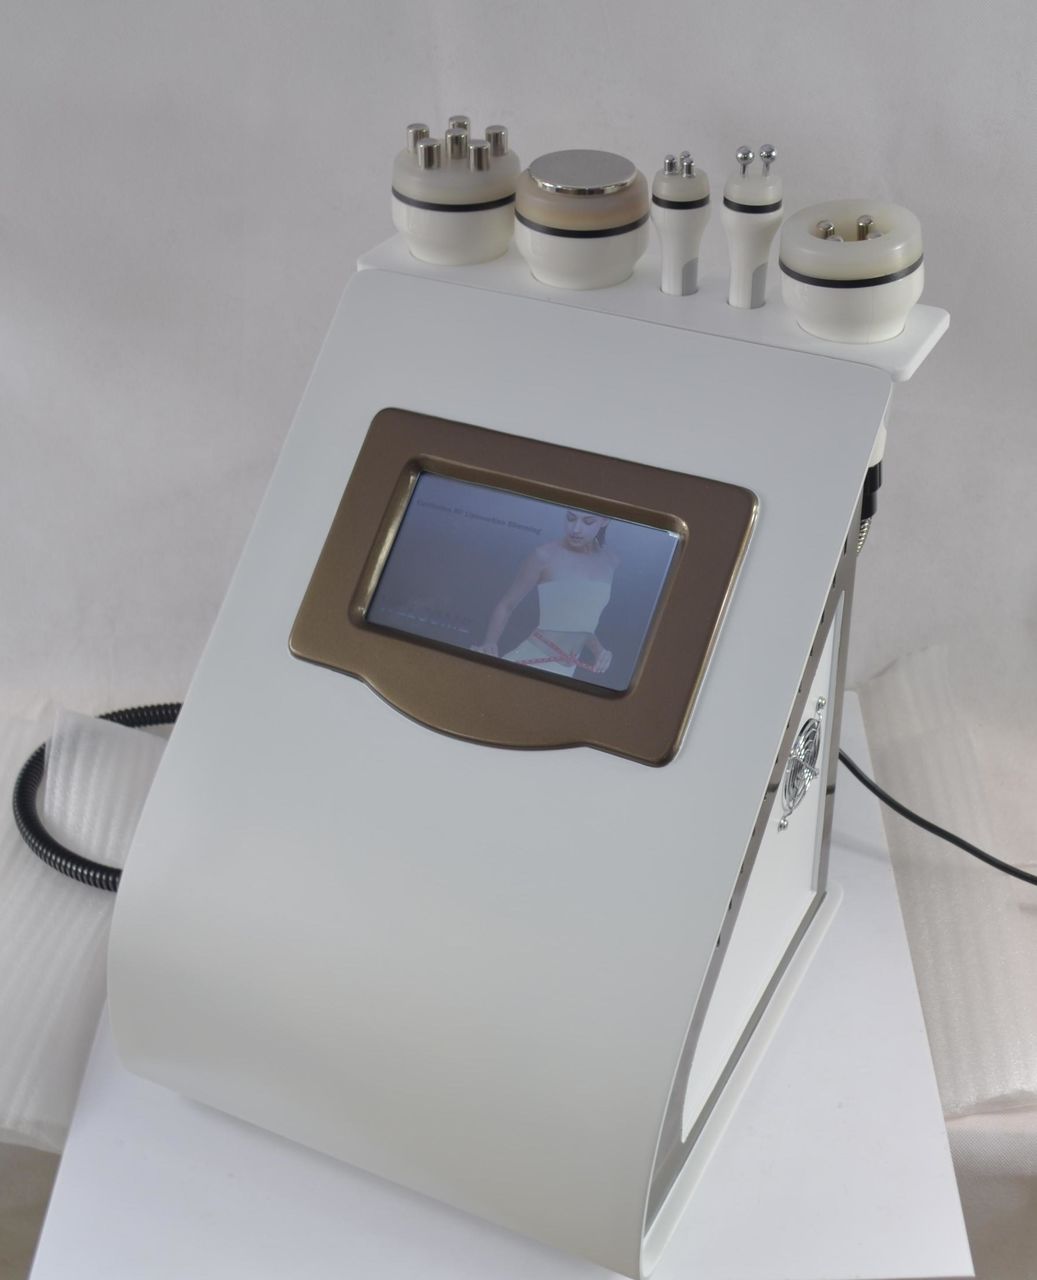  Аппарат 5 в 1 М15: Кавитация, RF-лифтинг лицо и тело, Микротоковая терапия